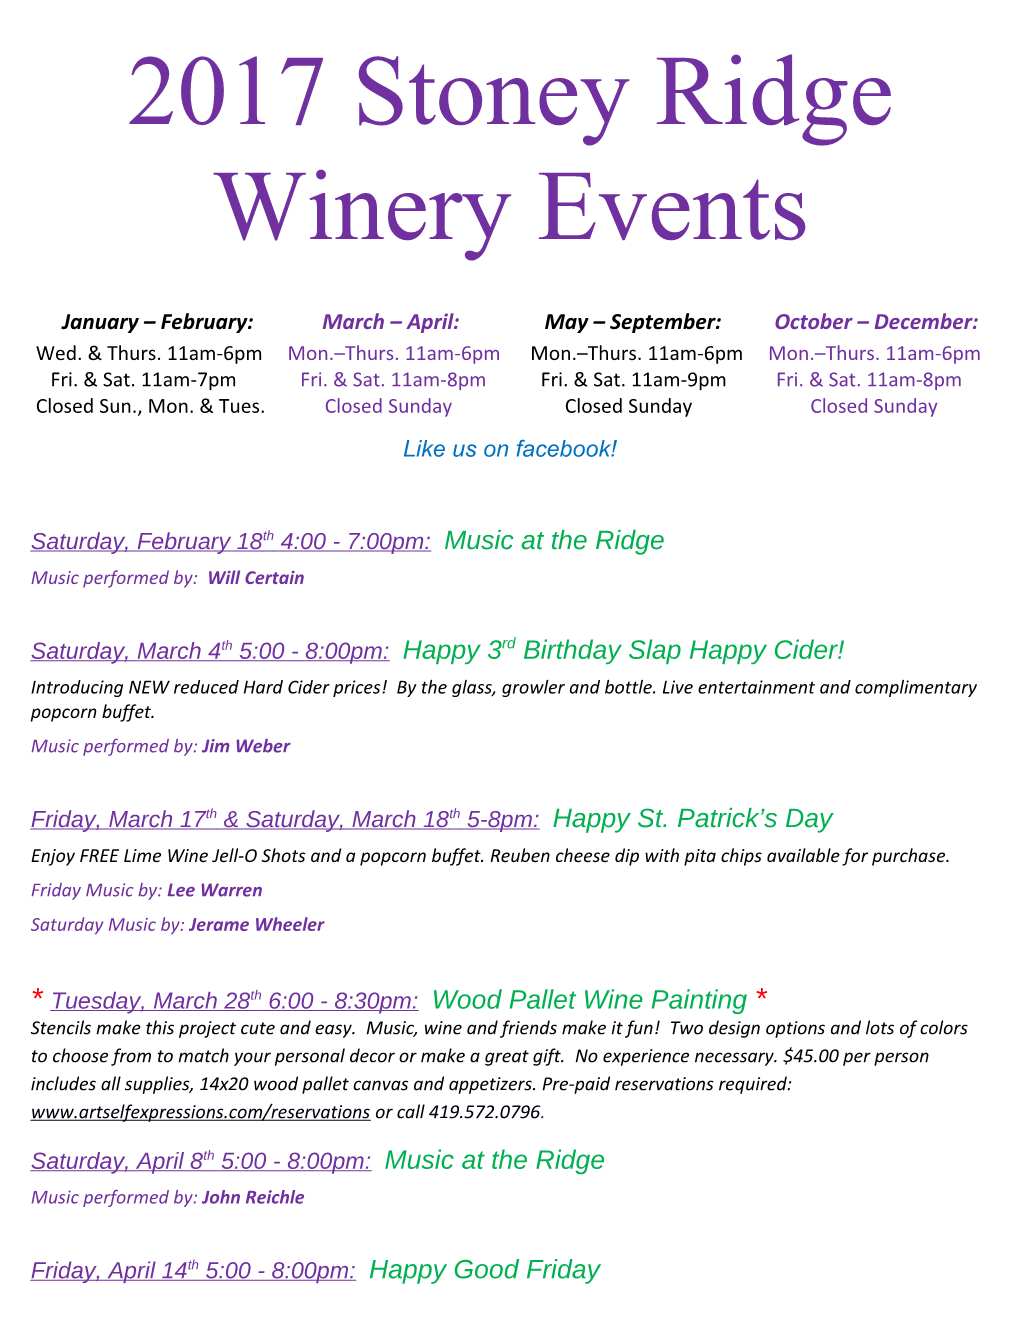 2012 Stoney Ridge Winery Events